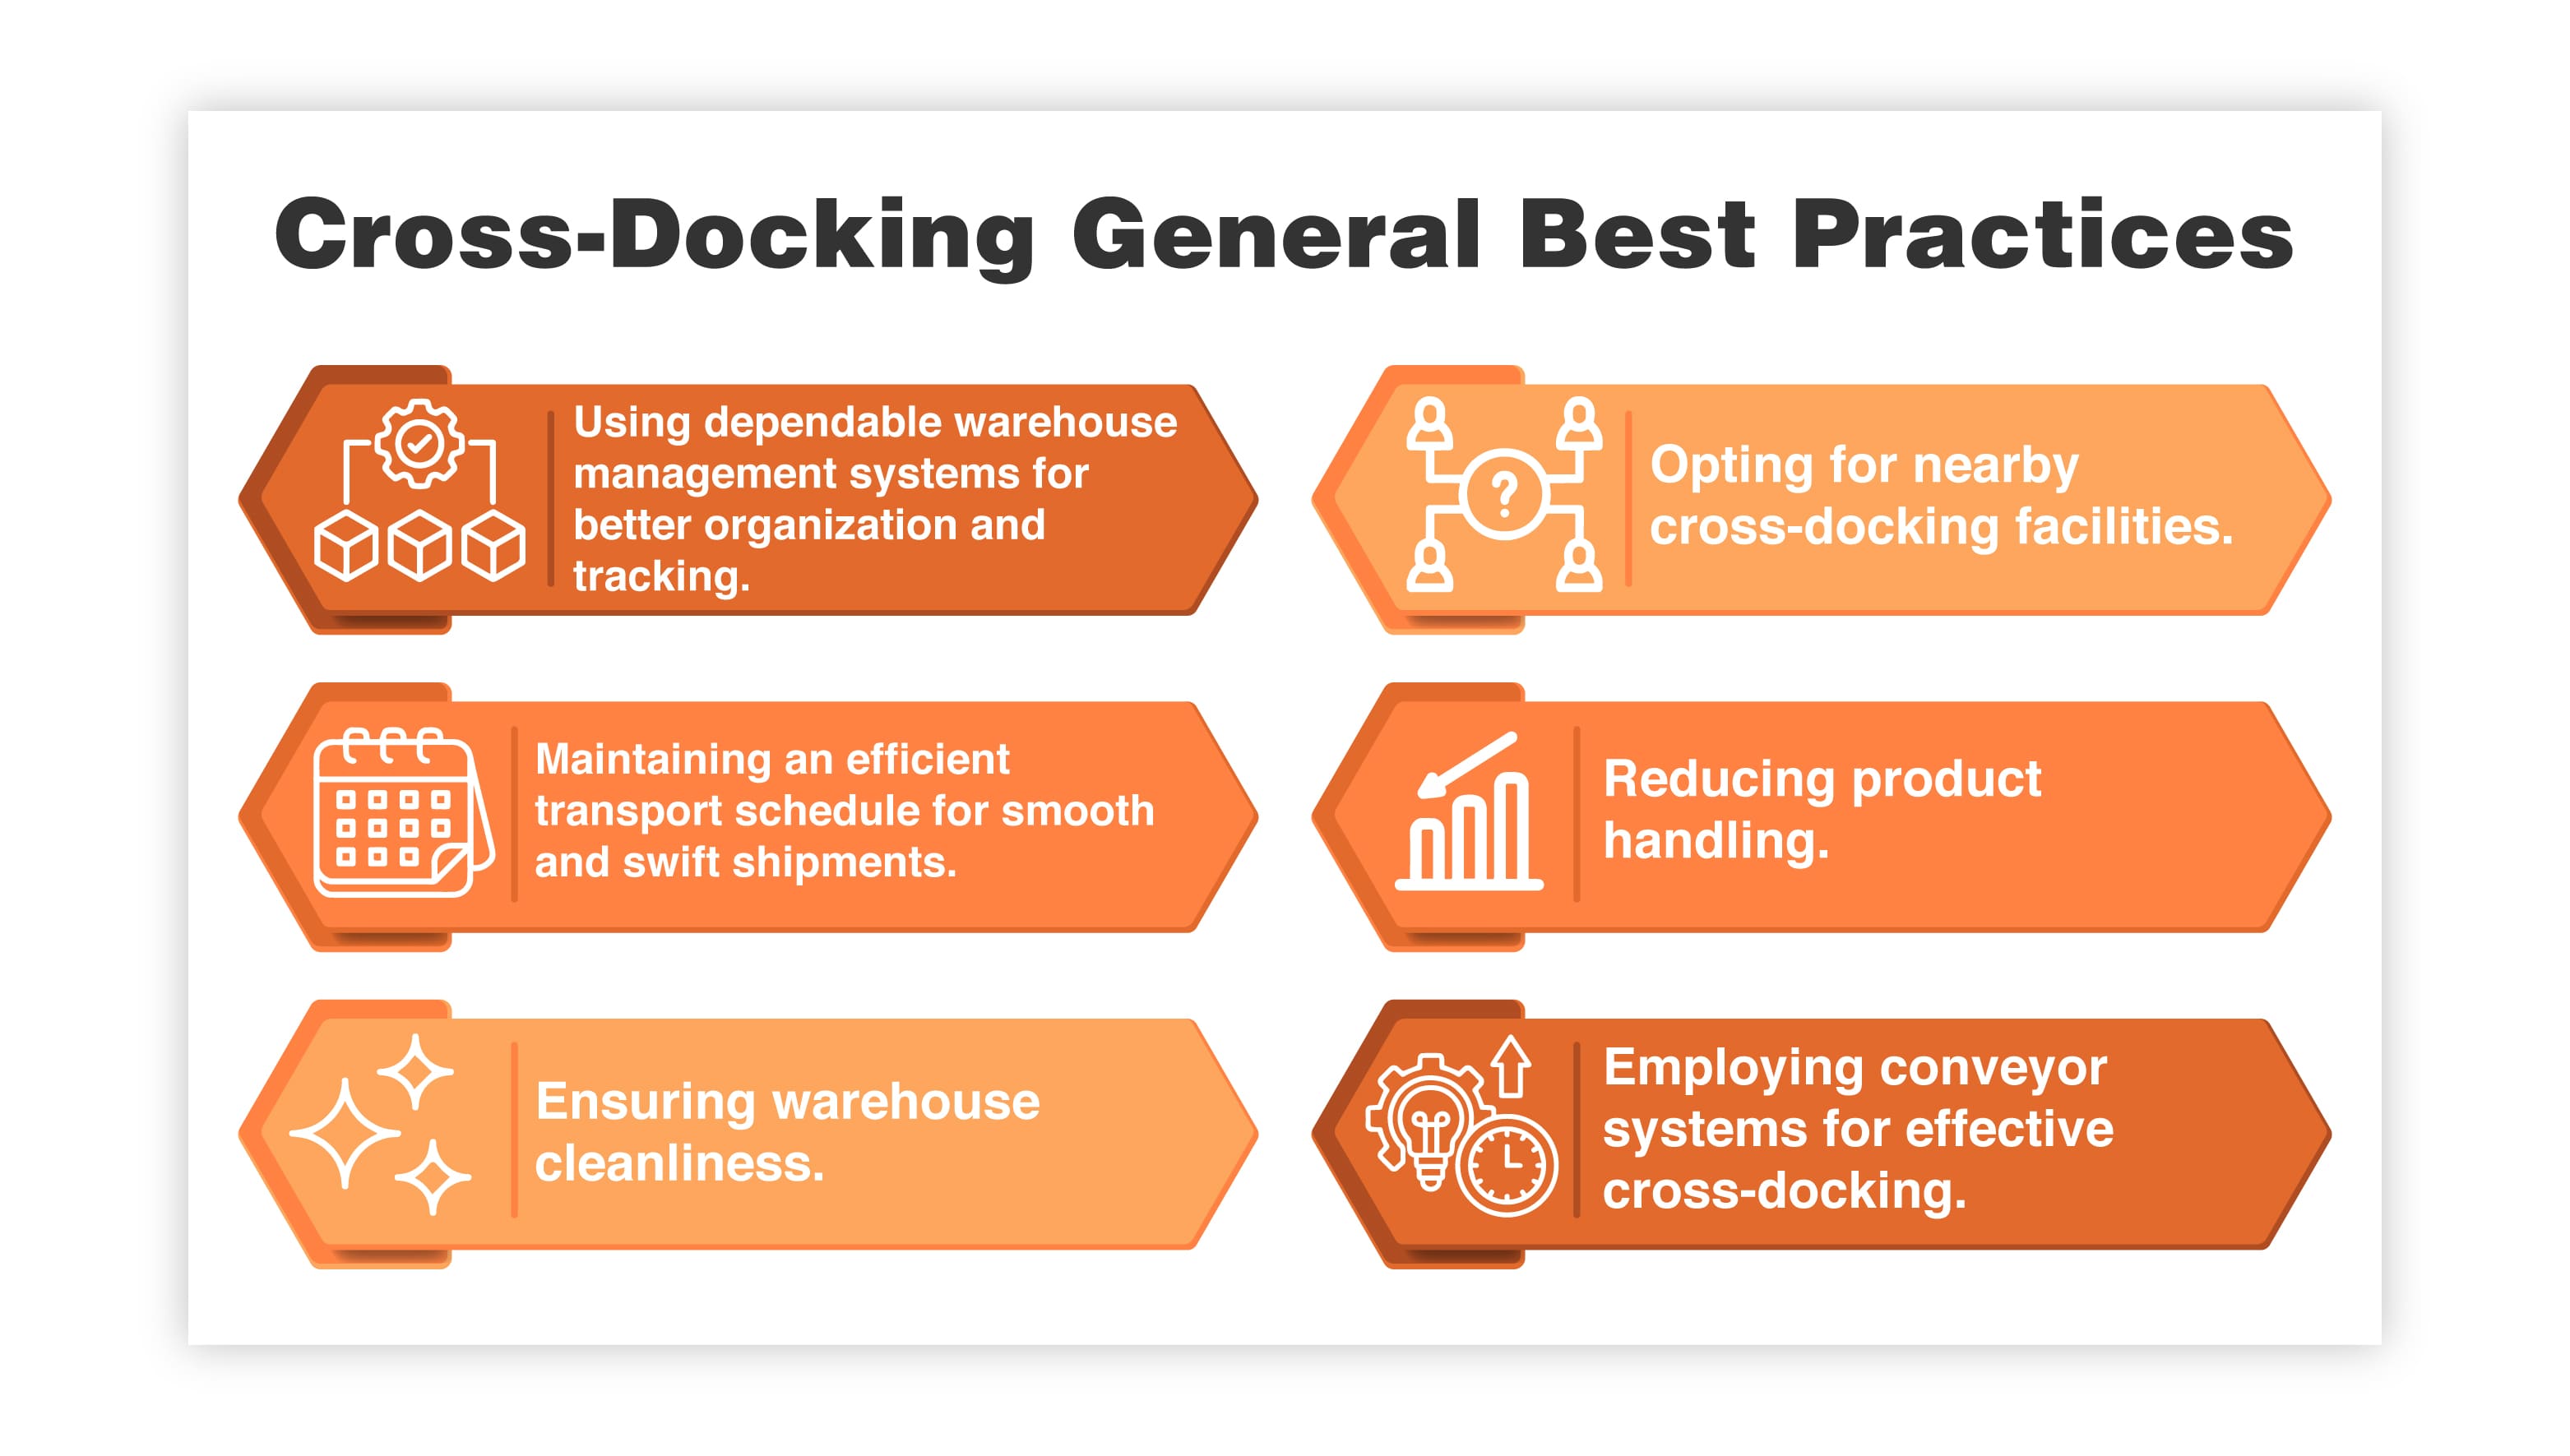 Cross-Docking General Best Practices